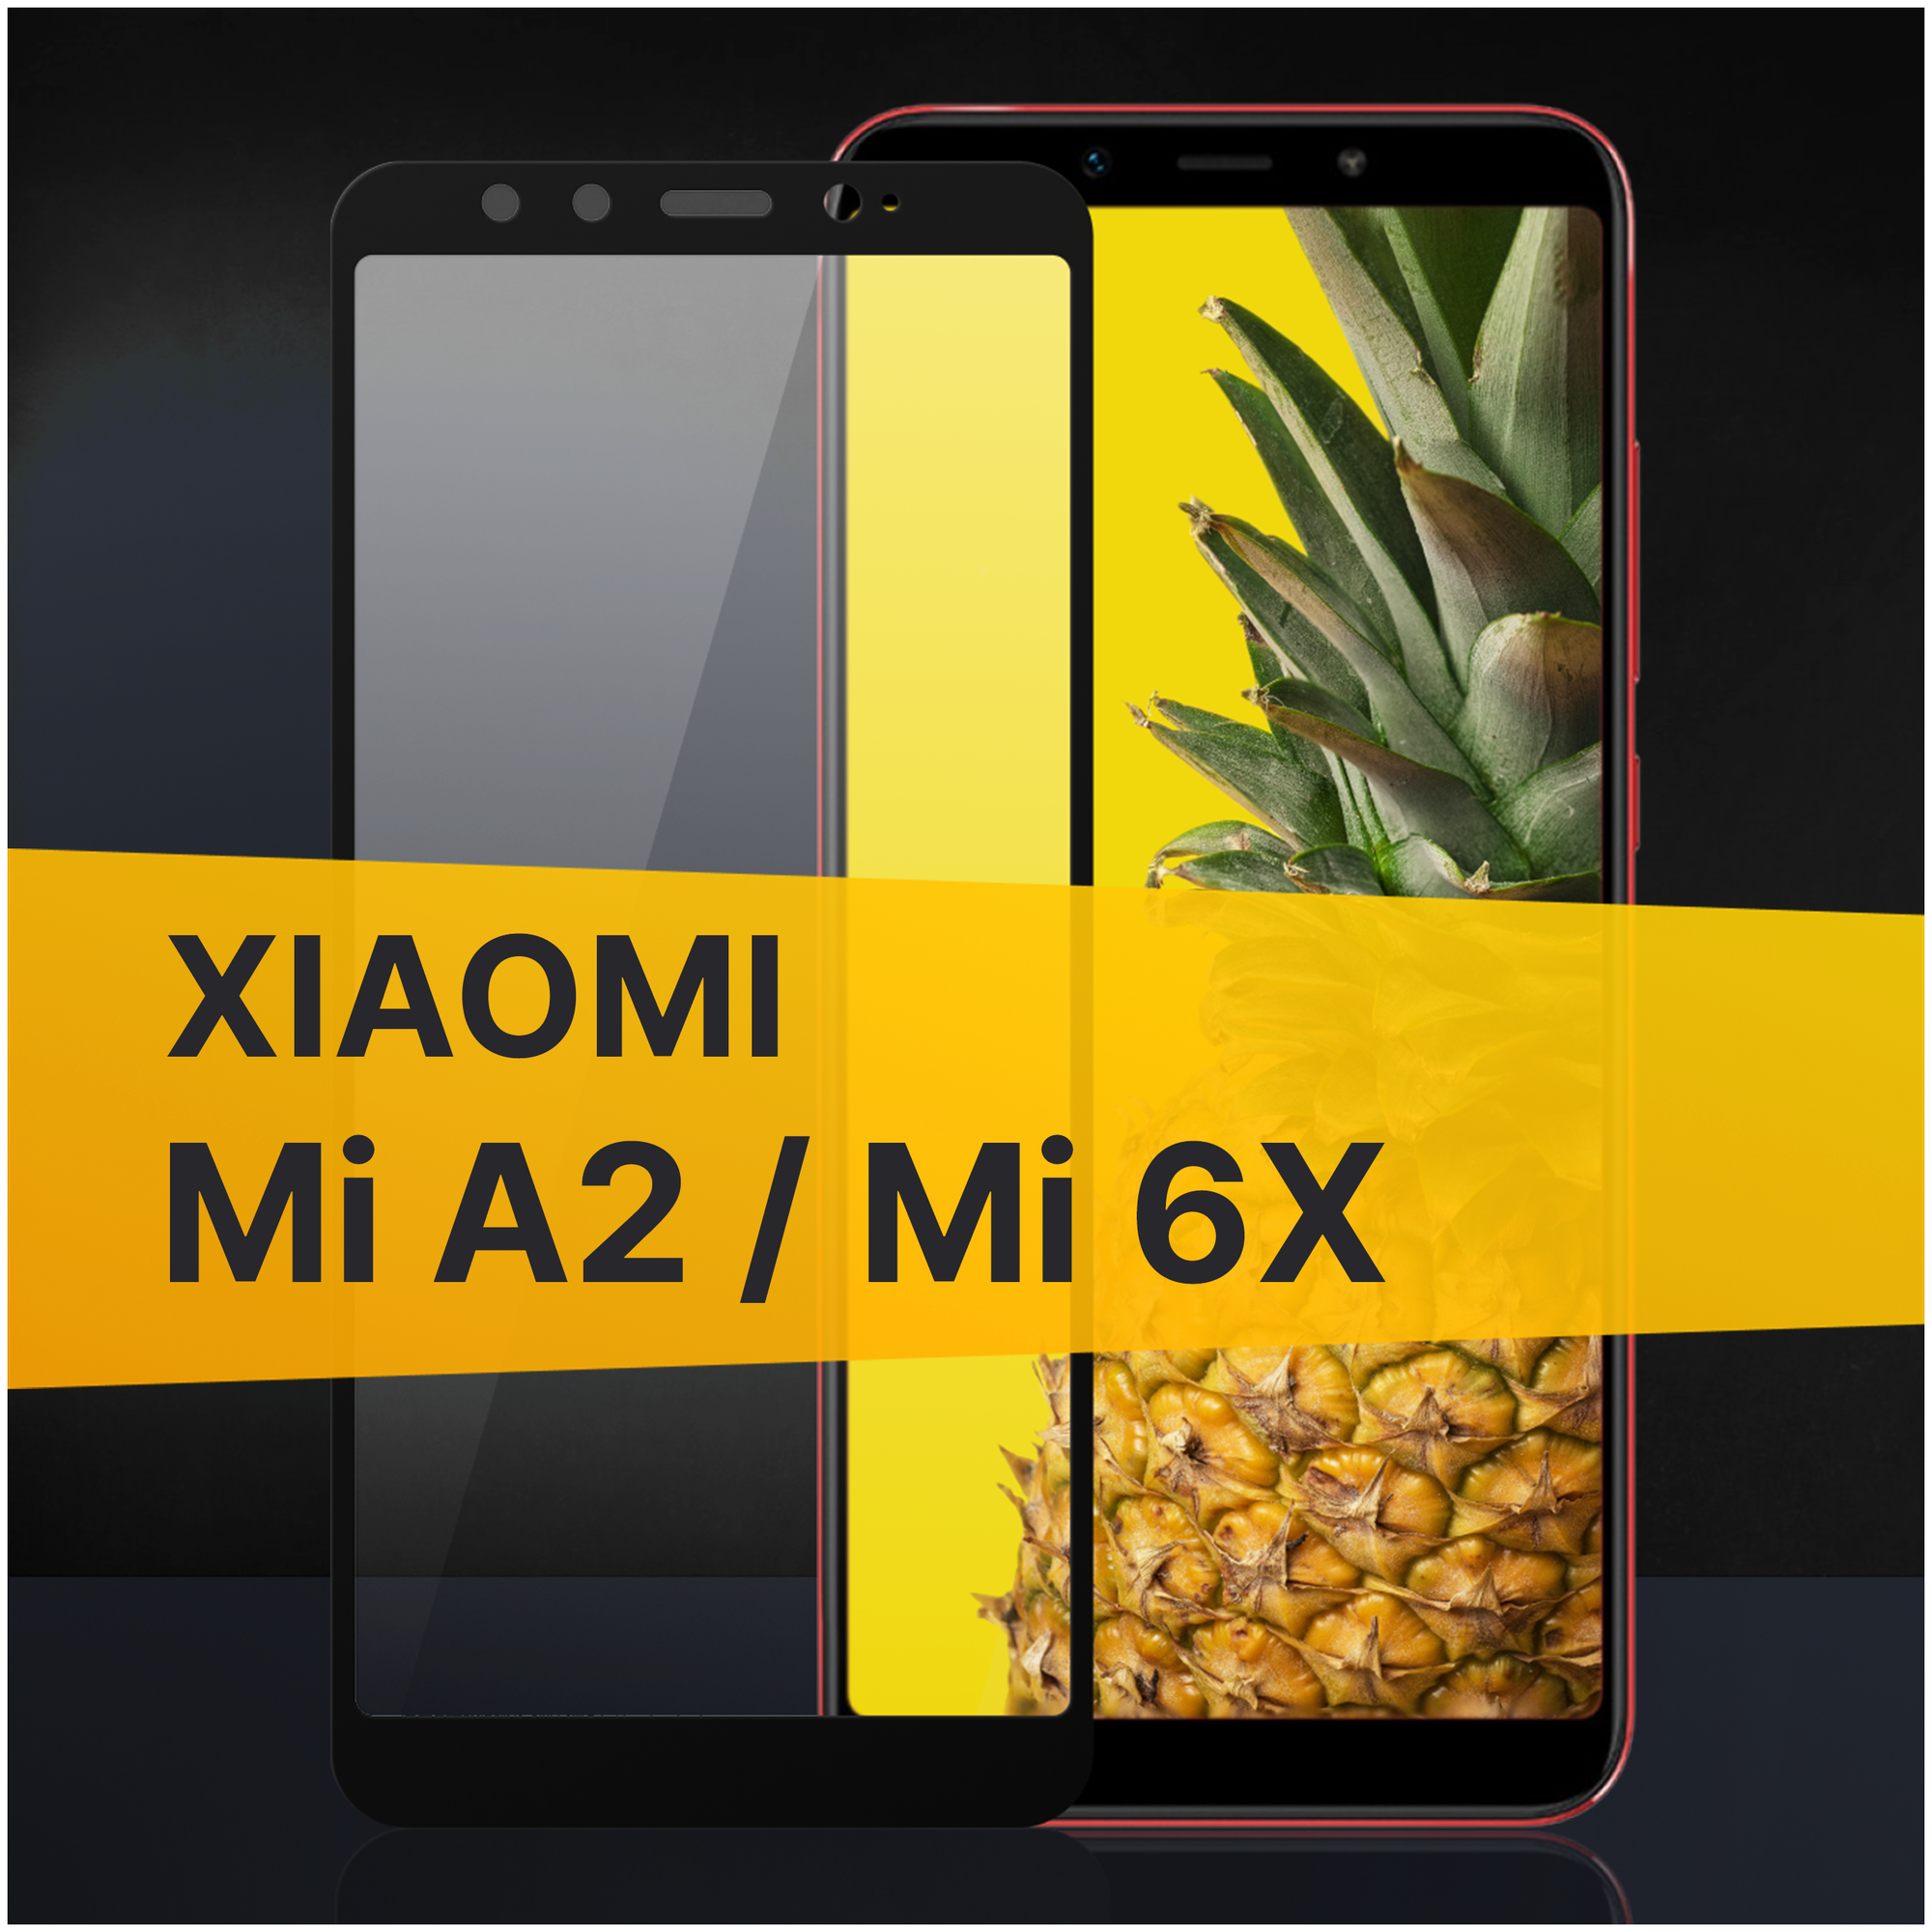 Противоударное защитное стекло для телефона Xiaomi Mi A2 и Mi 6X / Полноклеевое 3D стекло с олеофобным покрытием на смартфон Сяоми Ми А2 и Ми 6Х / С черной рамкой